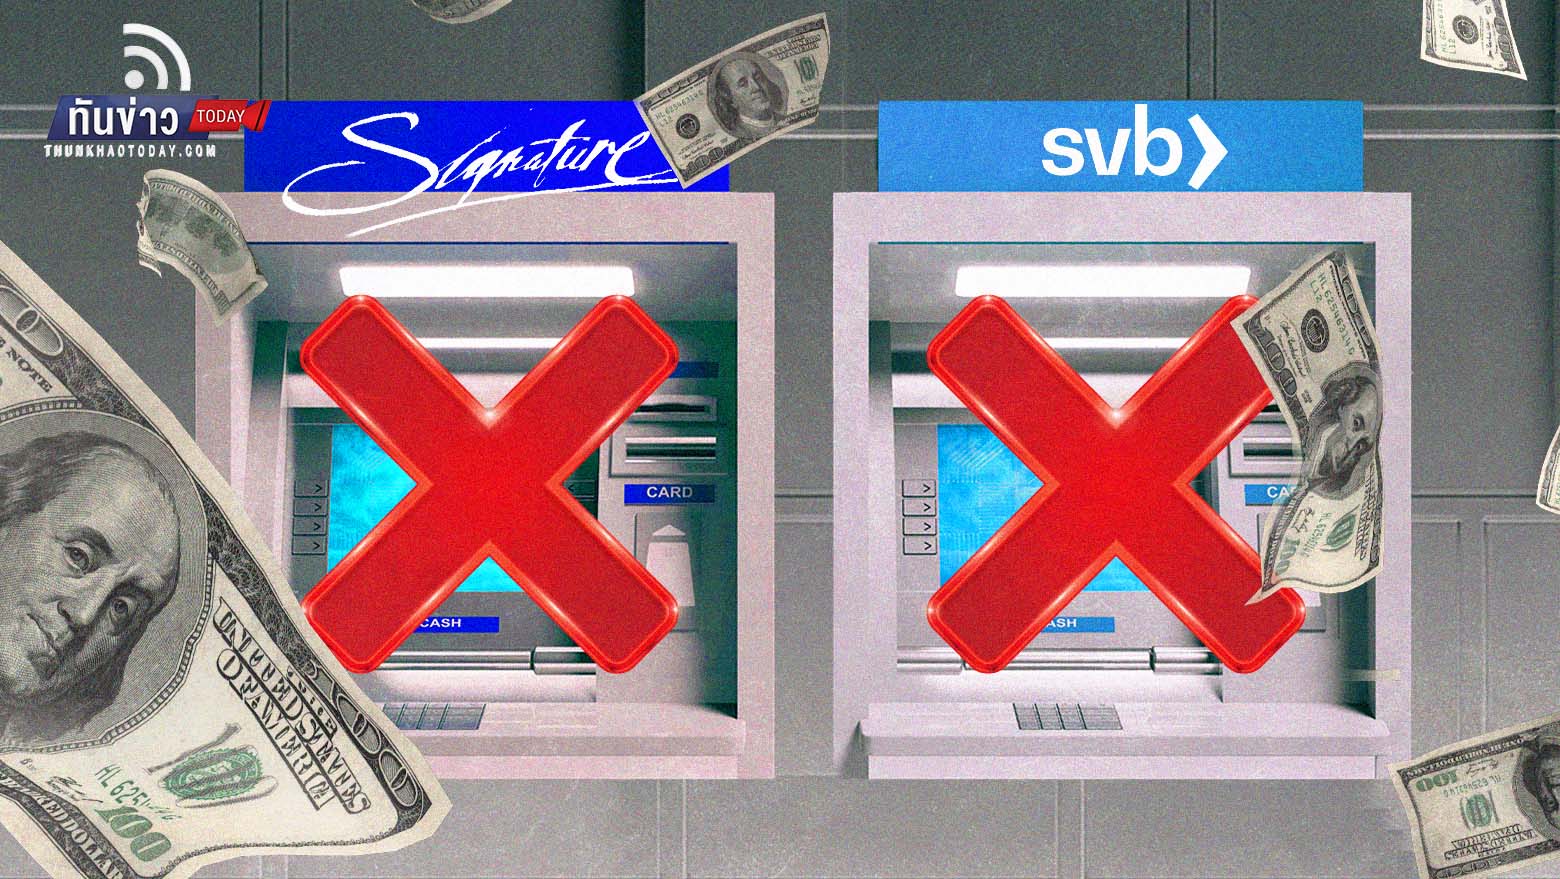 Silicon Valley Bank ล้มละลายเพราะ การขึ้นดอกเบี้ยของ Fed !!  ปิดเพิ่มอีกแบ็งก์  Signature Bank ที่ New York